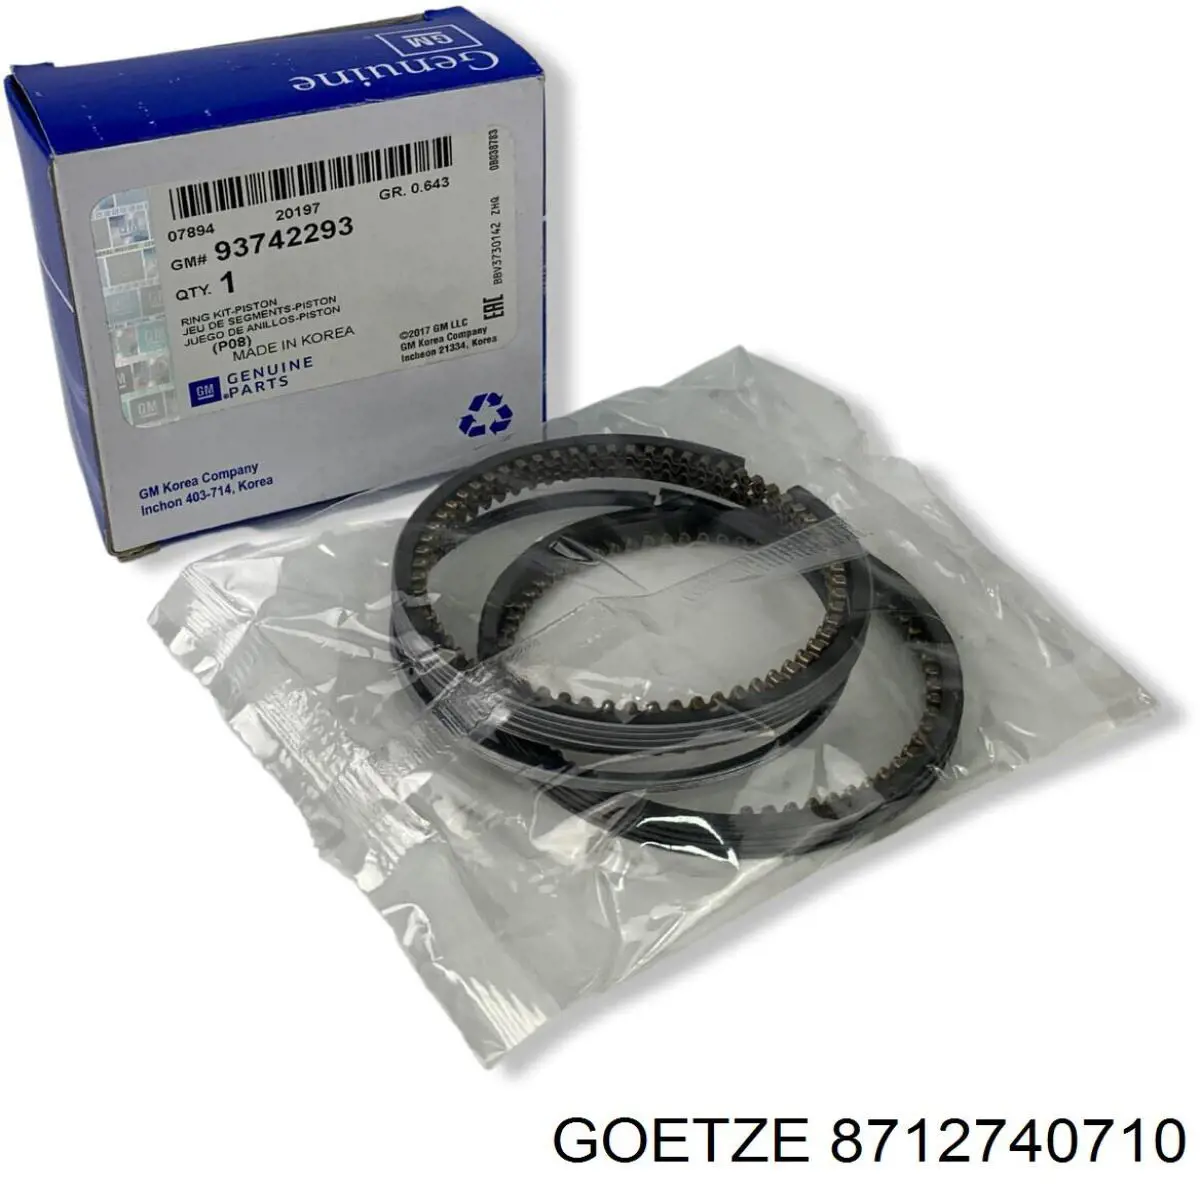 87-127407-10 Goetze поршень в комплекте на 1 цилиндр, 2-й ремонт (+0,50)